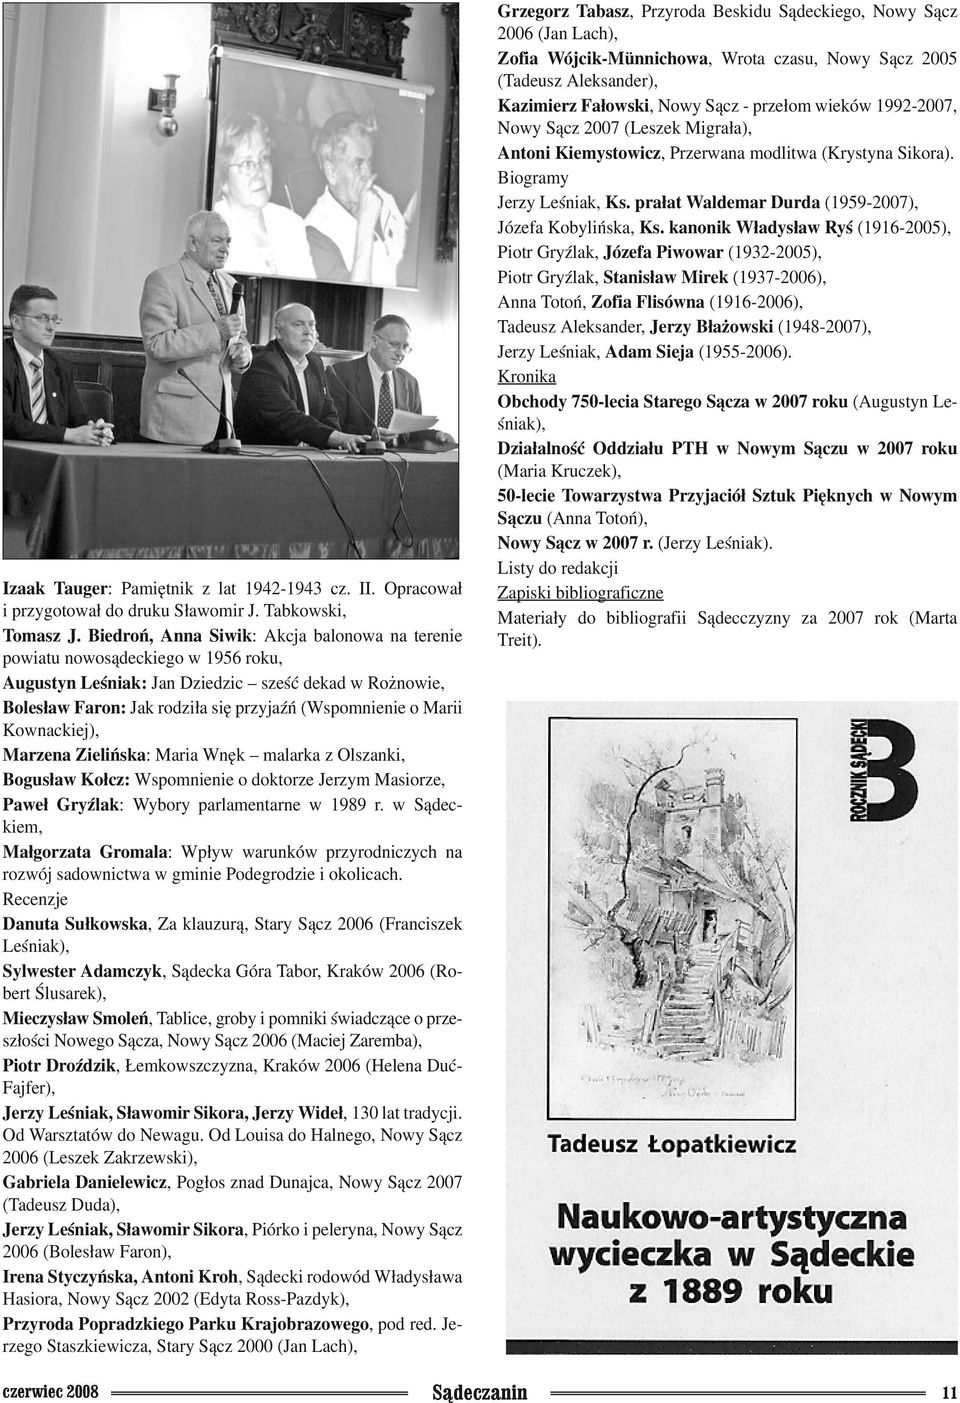 Kownackiej), Marzena Zielińska: Maria Wnęk malarka z Olszanki, Bogusław Kołcz: Wspomnienie o doktorze Jerzym Masiorze, Paweł Gryźlak: Wybory parlamentarne w 1989 r.